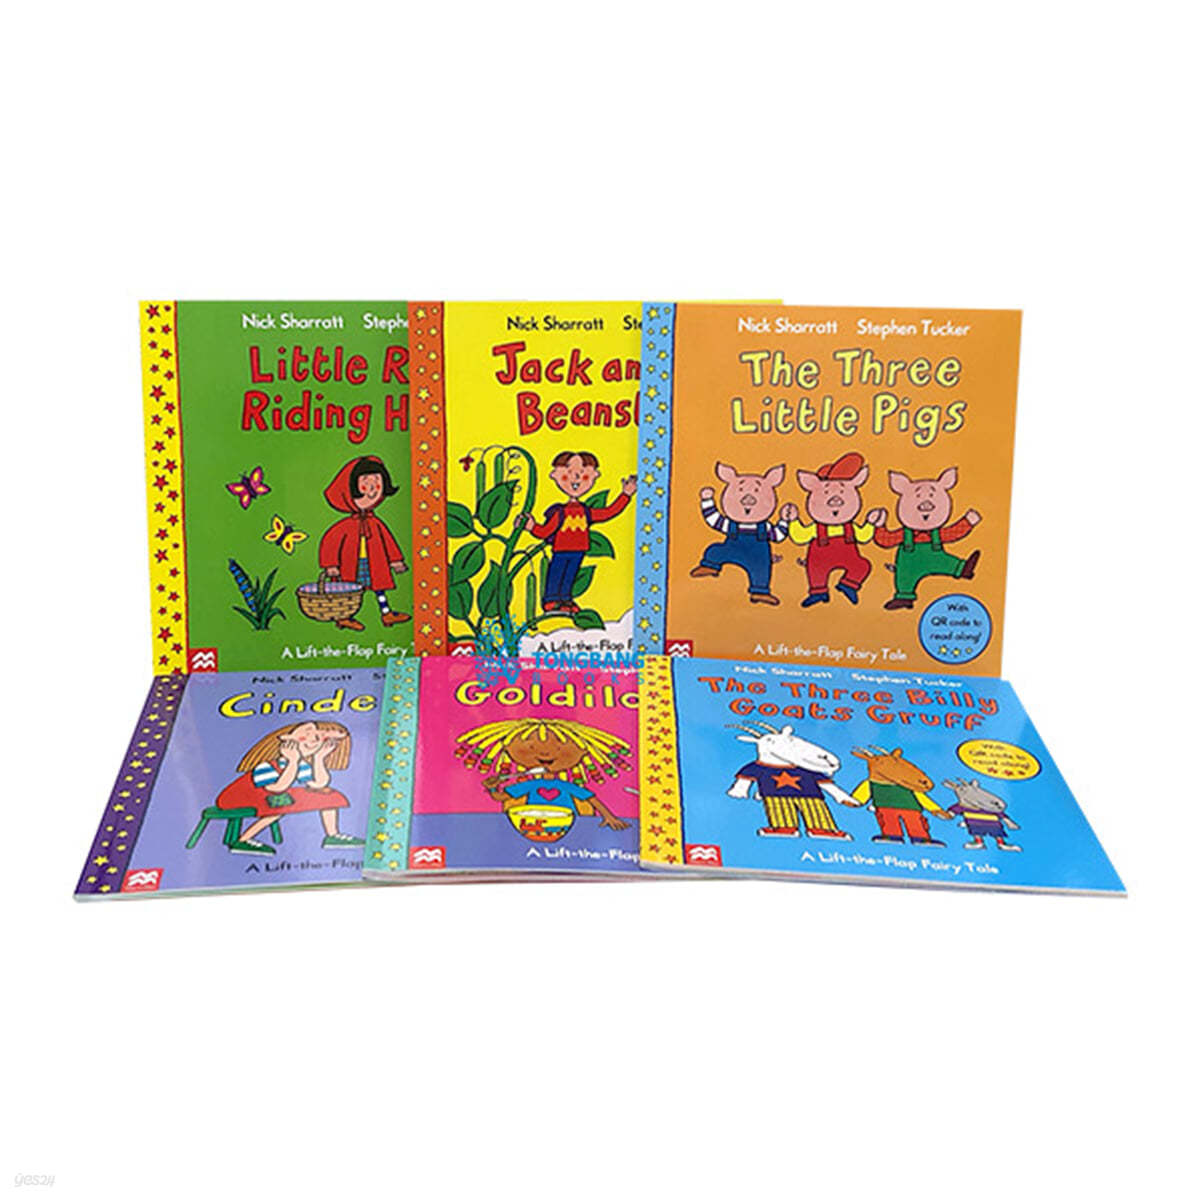 닉 샤렛 버전 명작 동화 6종 세트 : A Lift-the Flap Fairy Tales 6 Books Set